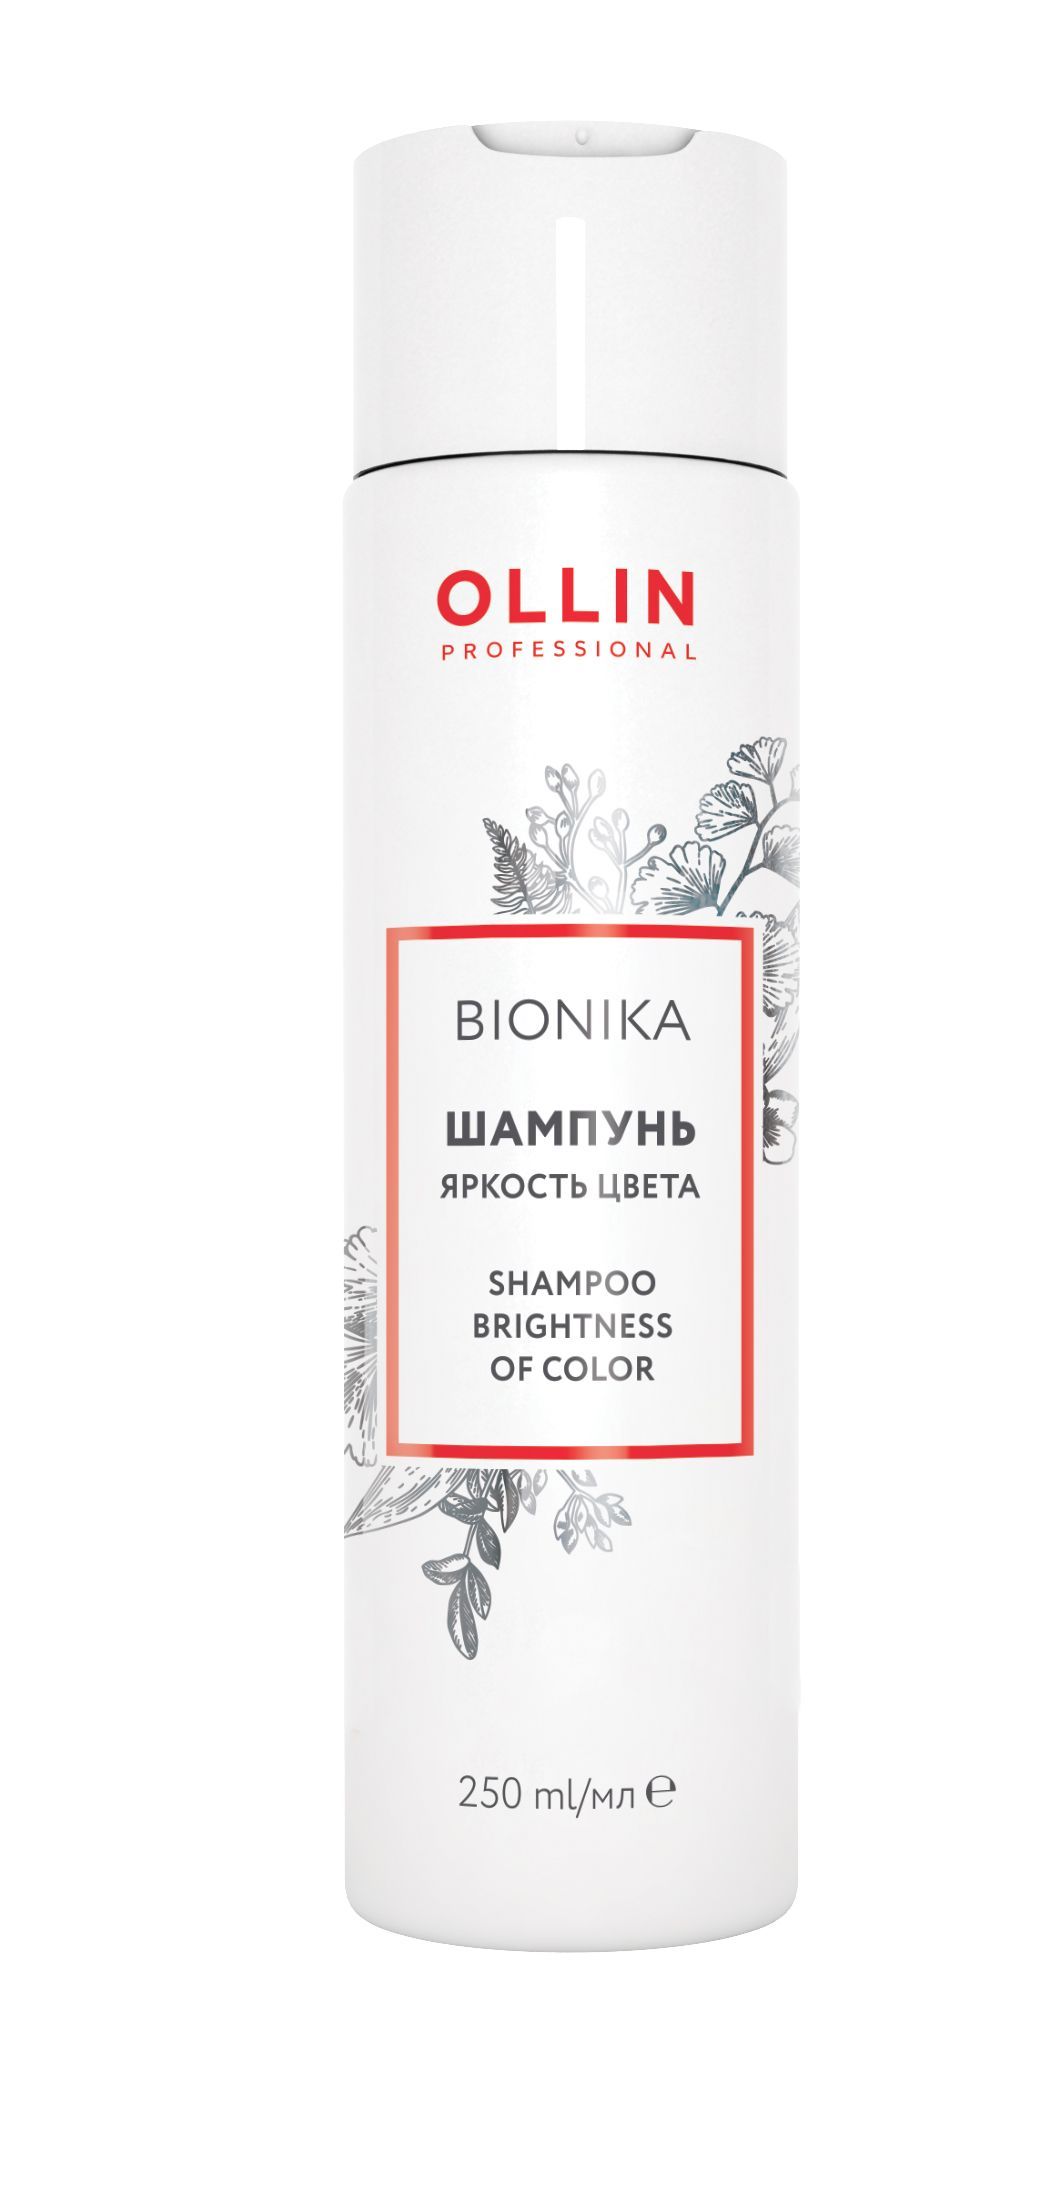 Ollin, Шампунь для окрашенных волос «Яркость цвета» серии «BioNika», Фото интернет-магазин Премиум-Косметика.РФ